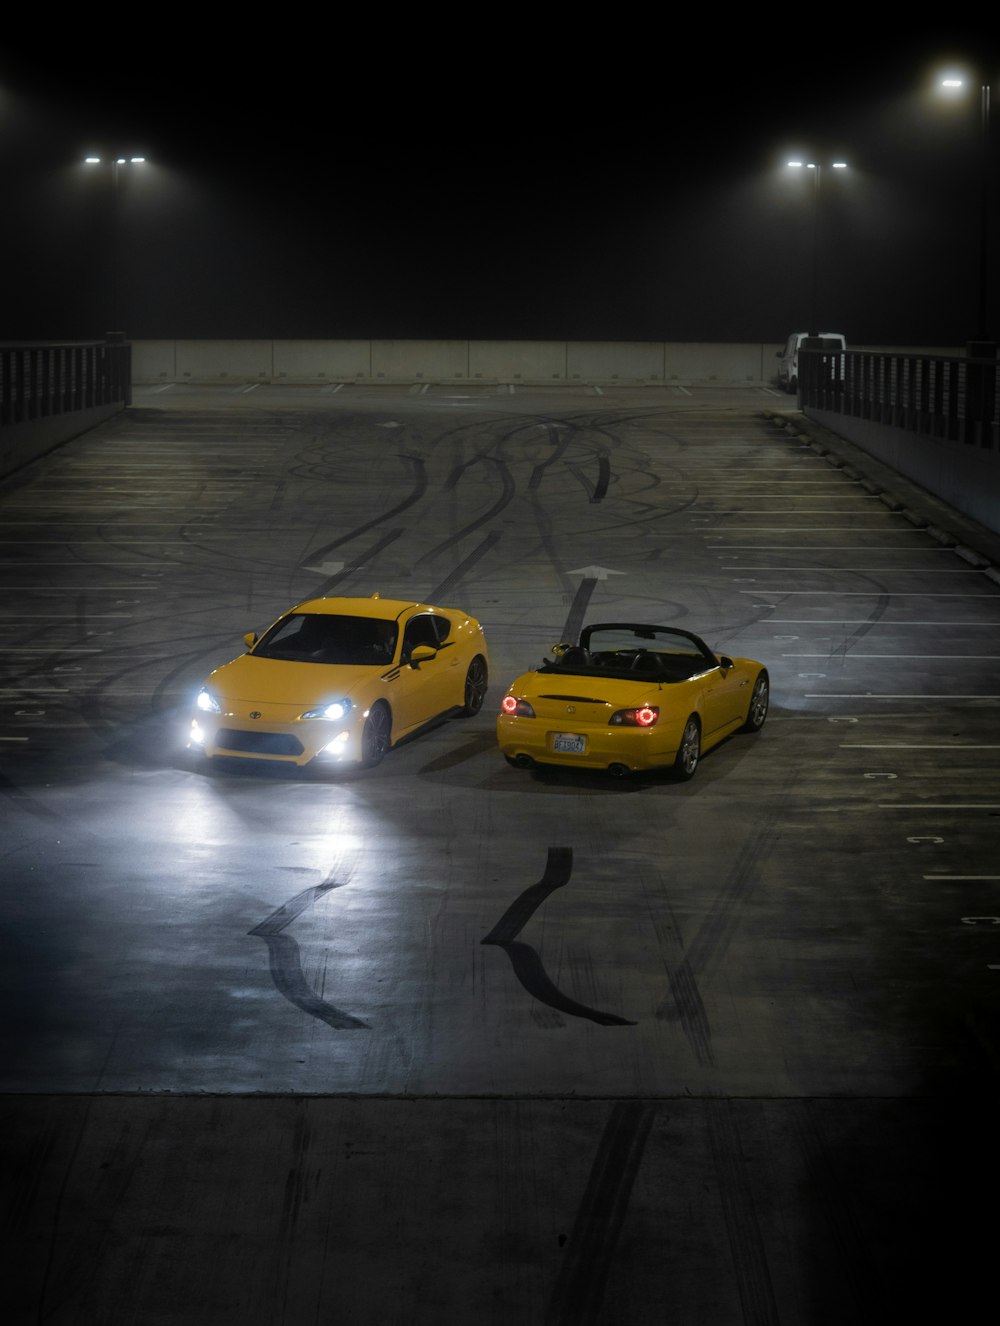 Dos autos deportivos amarillos en un estacionamiento por la noche